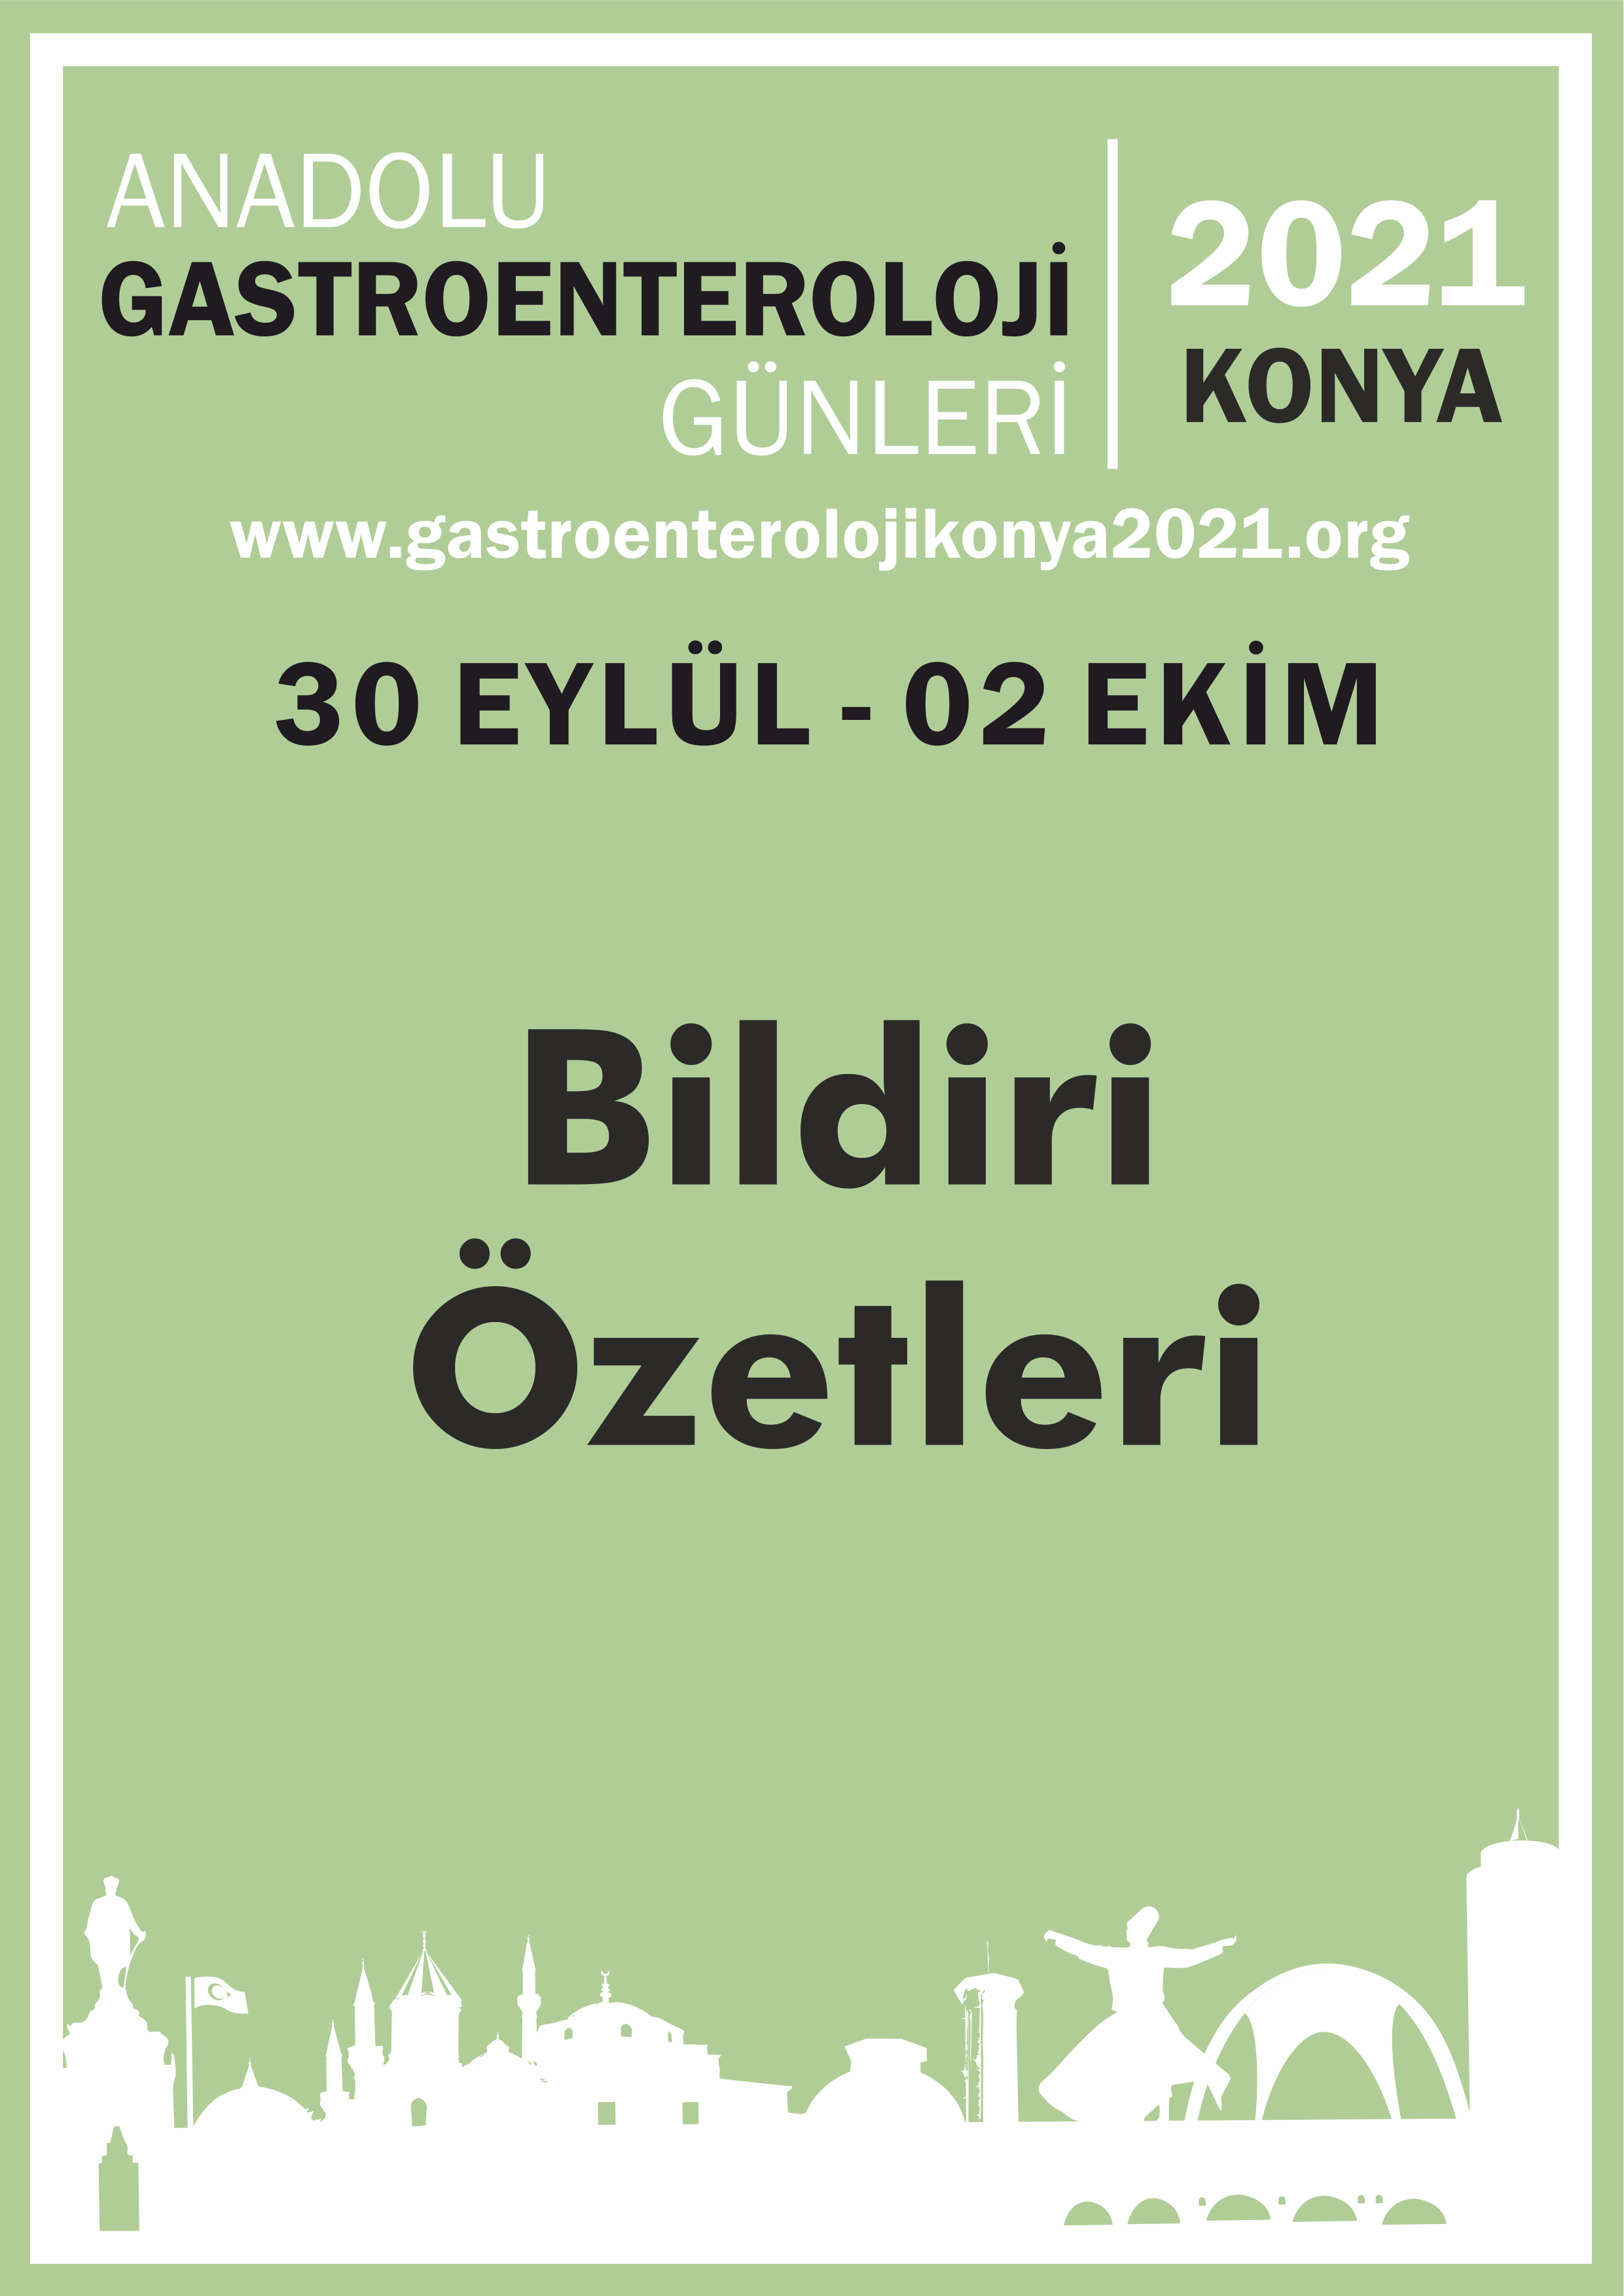 Anadolu Gastroenteroloji Günleri 2021 Konya